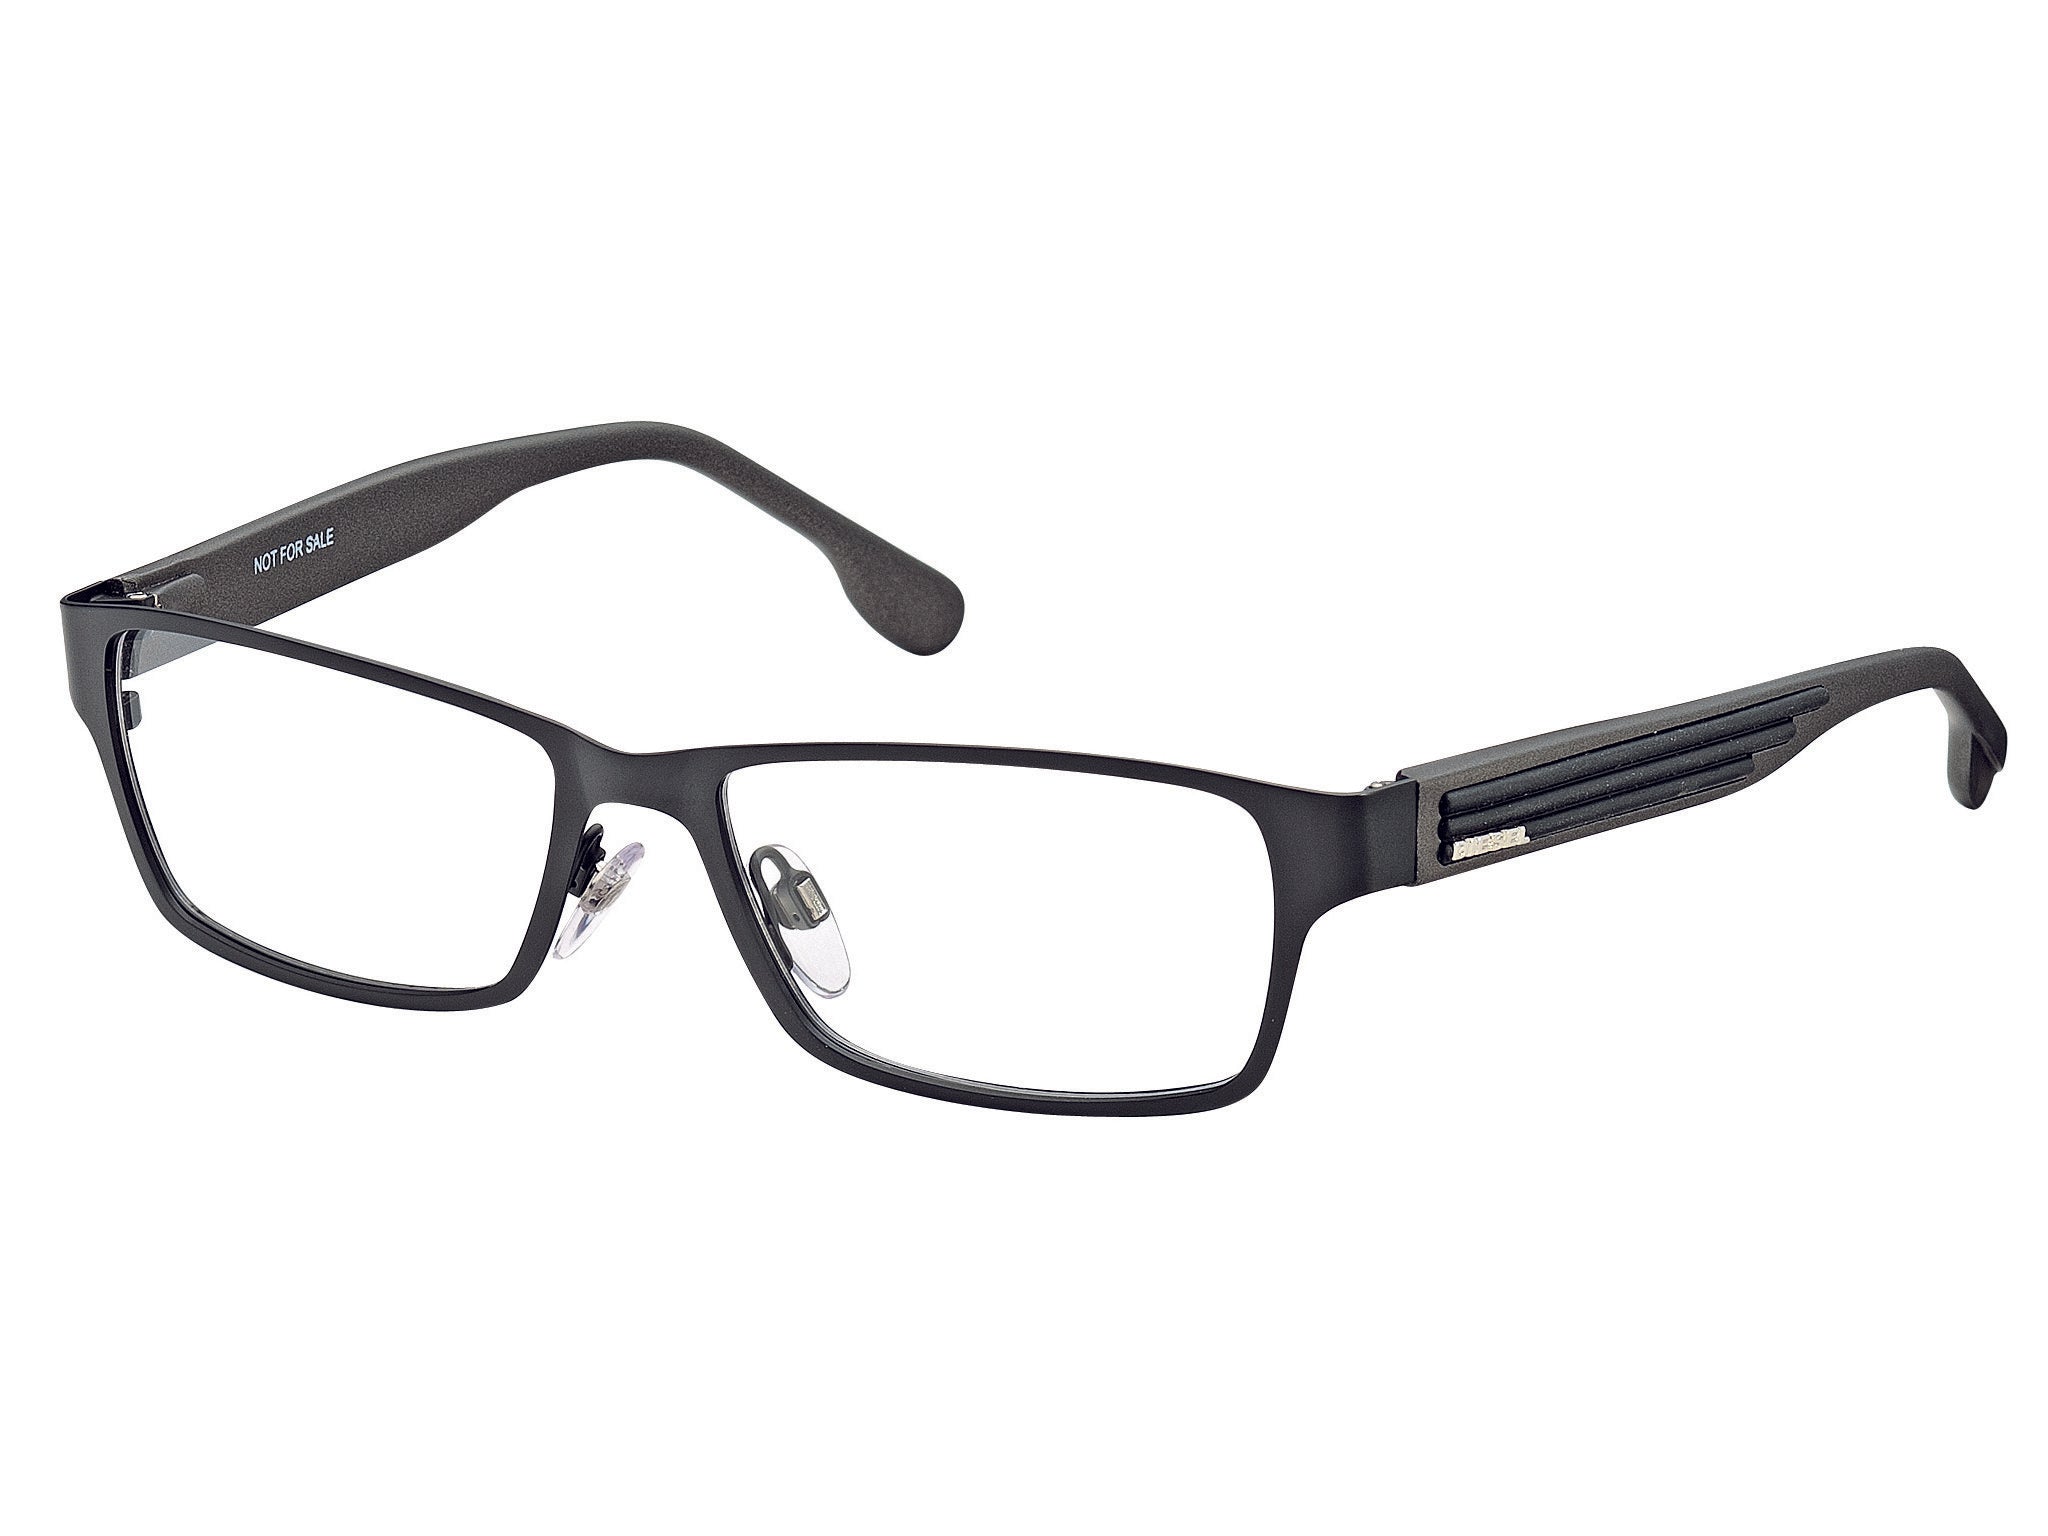 Diesel DL5014 Eyeglasses 002-002 - Matte Black